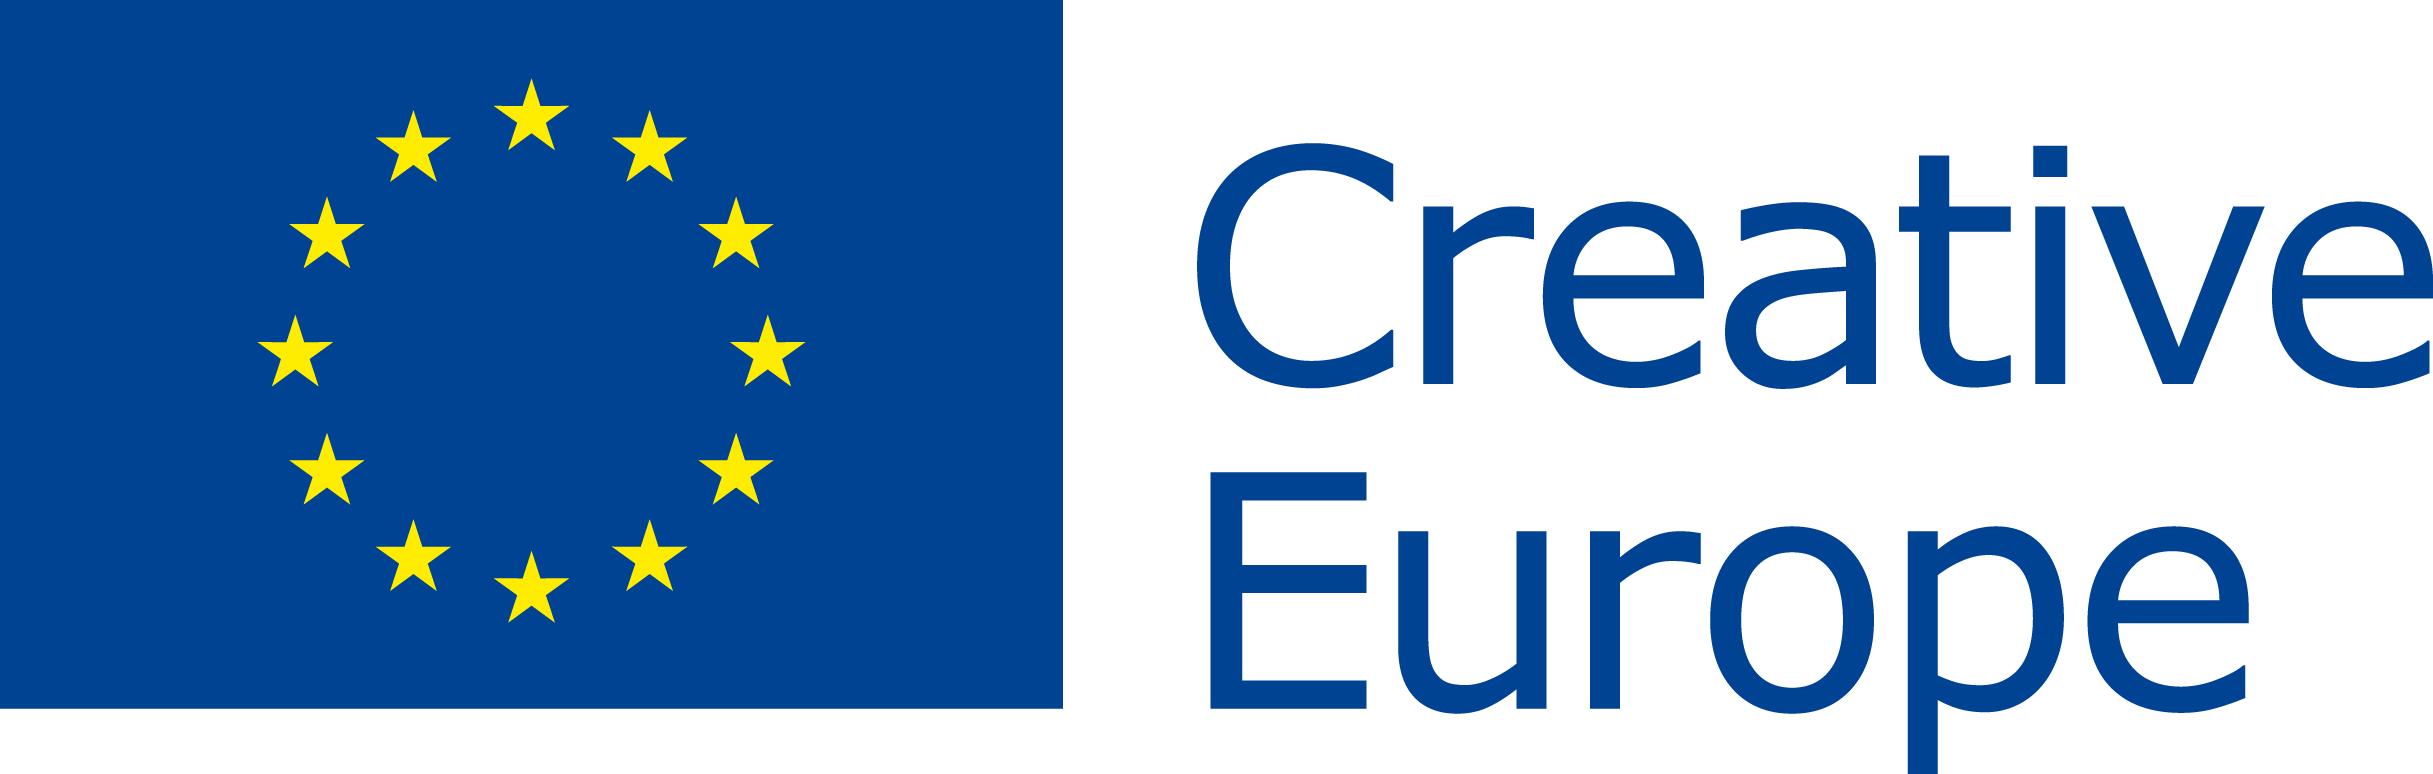 Logo programu Unii Europejskiej Kreatywna Europa, po lewej flaga Unii Europejskiej, po prawej napis: Kreatywna Europa